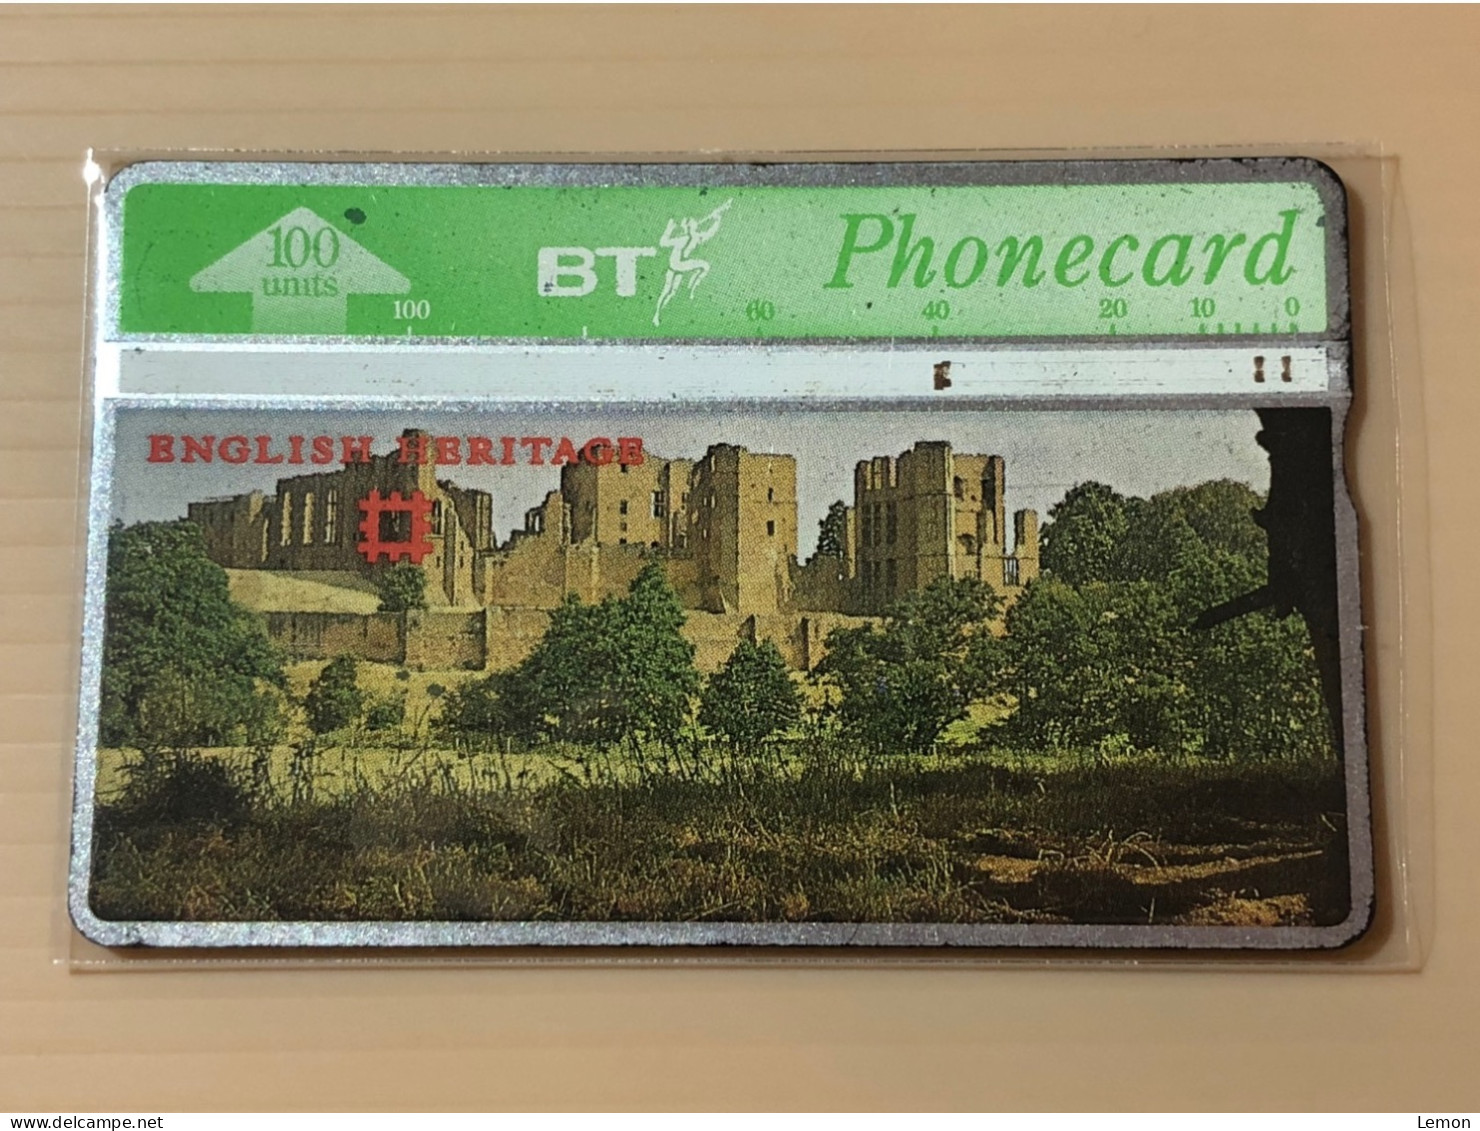 UK United Kingdom - British Telecom Phonecard - English Heritages - Set Of 1 Used Card - Sammlungen